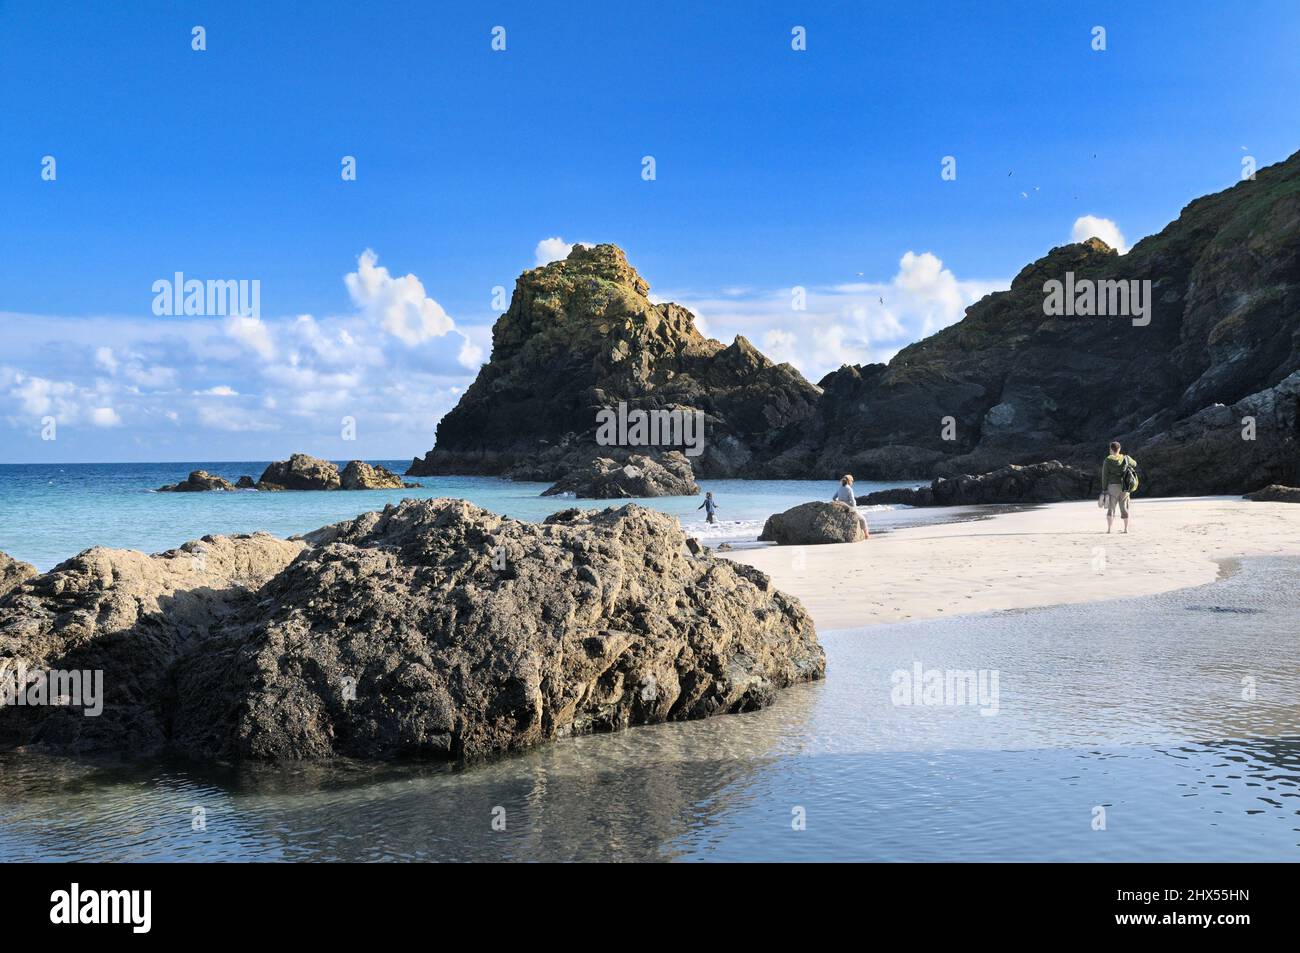 Kynance ensenada en la península de Lizard, con sus inconfundibles serpentina pilas de rocas, arena blanca y aguas turquesas, Cornwall, Inglaterra, Reino Unido. Foto de stock